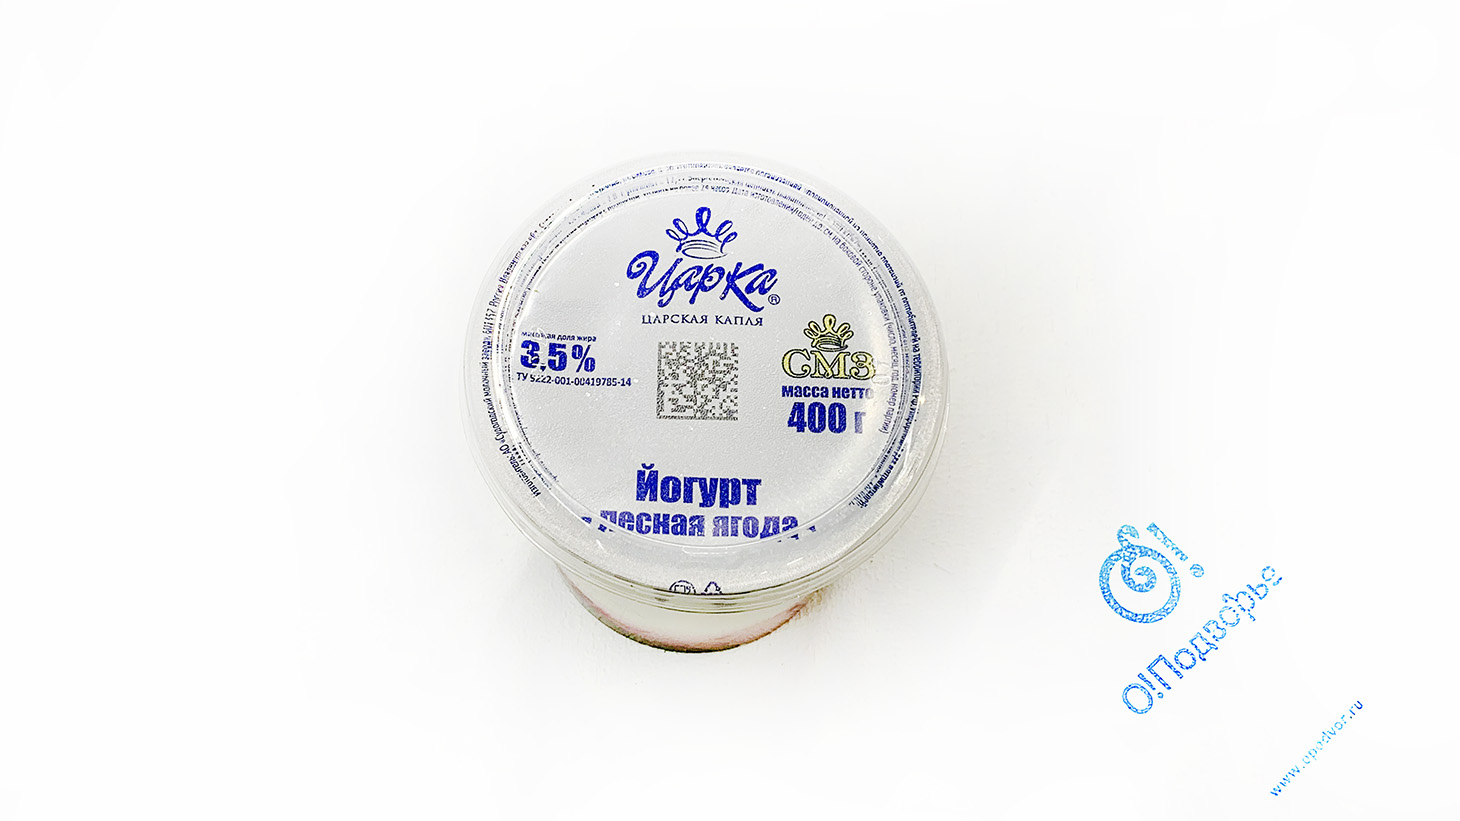 Йогурт лесная ягода "Царка" Царская капля, 3,5%, 400 грамм